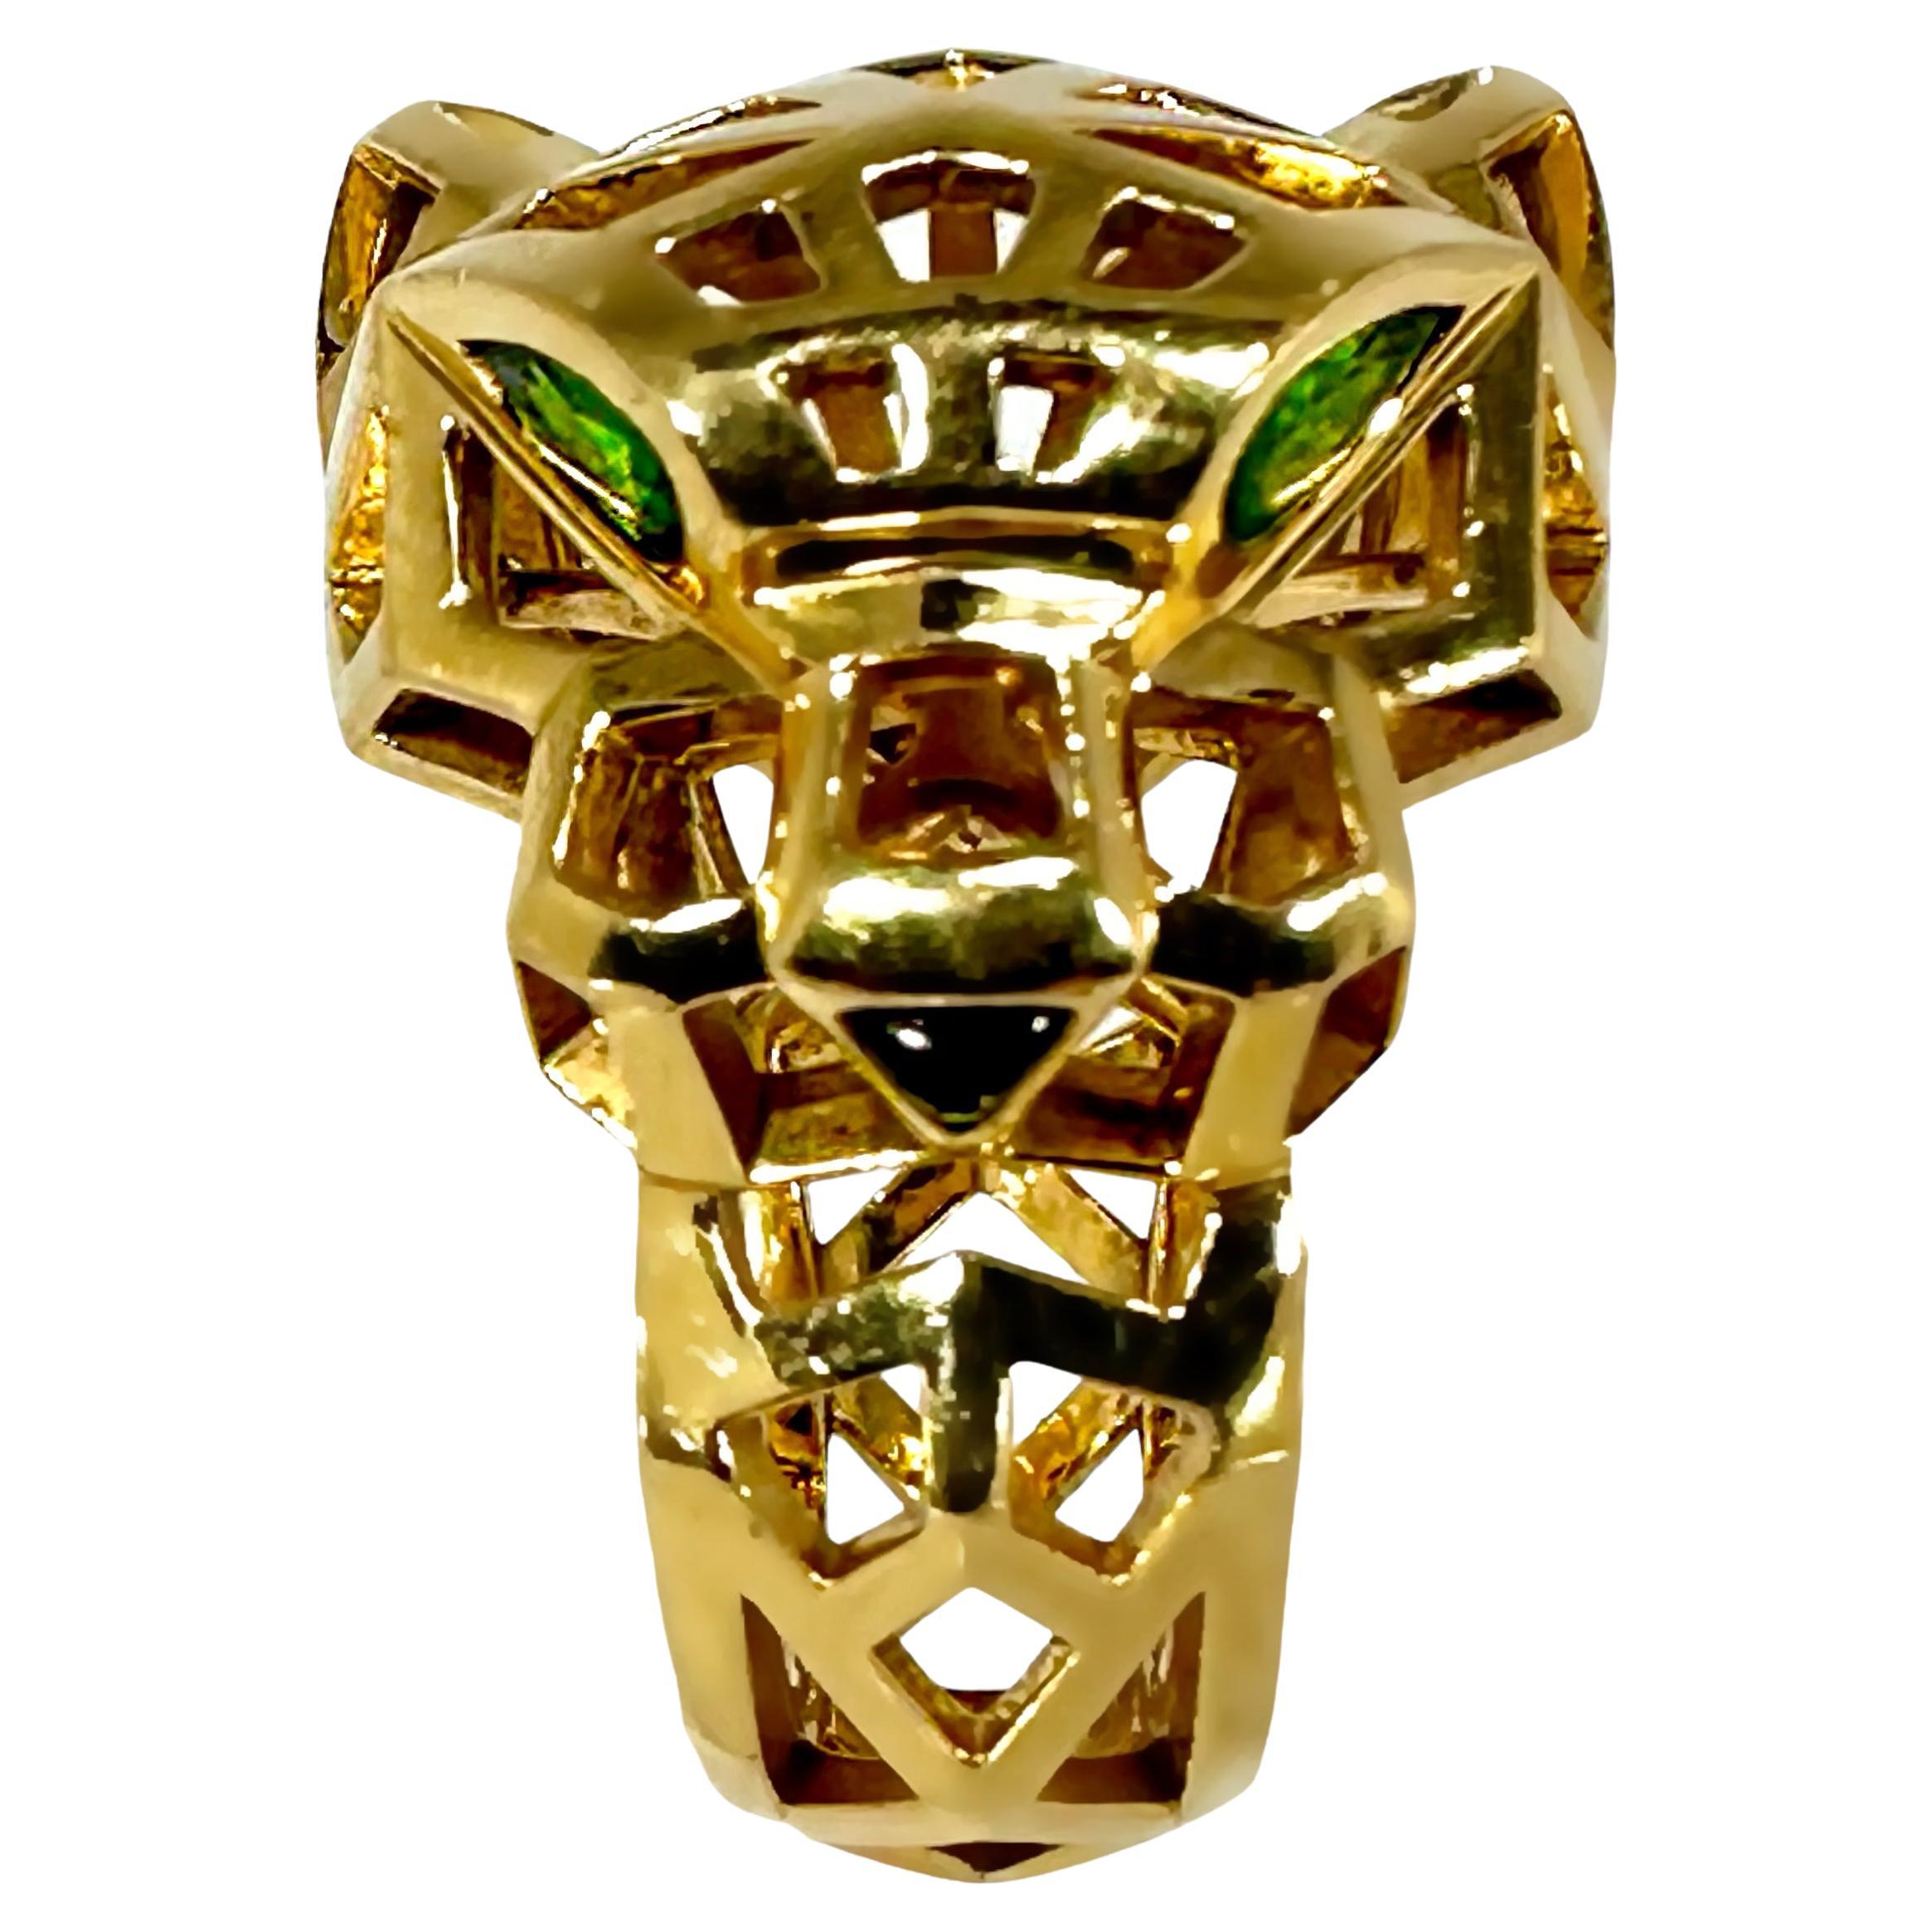 Damenring Panthere de Cartier in Gold mit Tsavorit Granat Augen & Onyx Nose